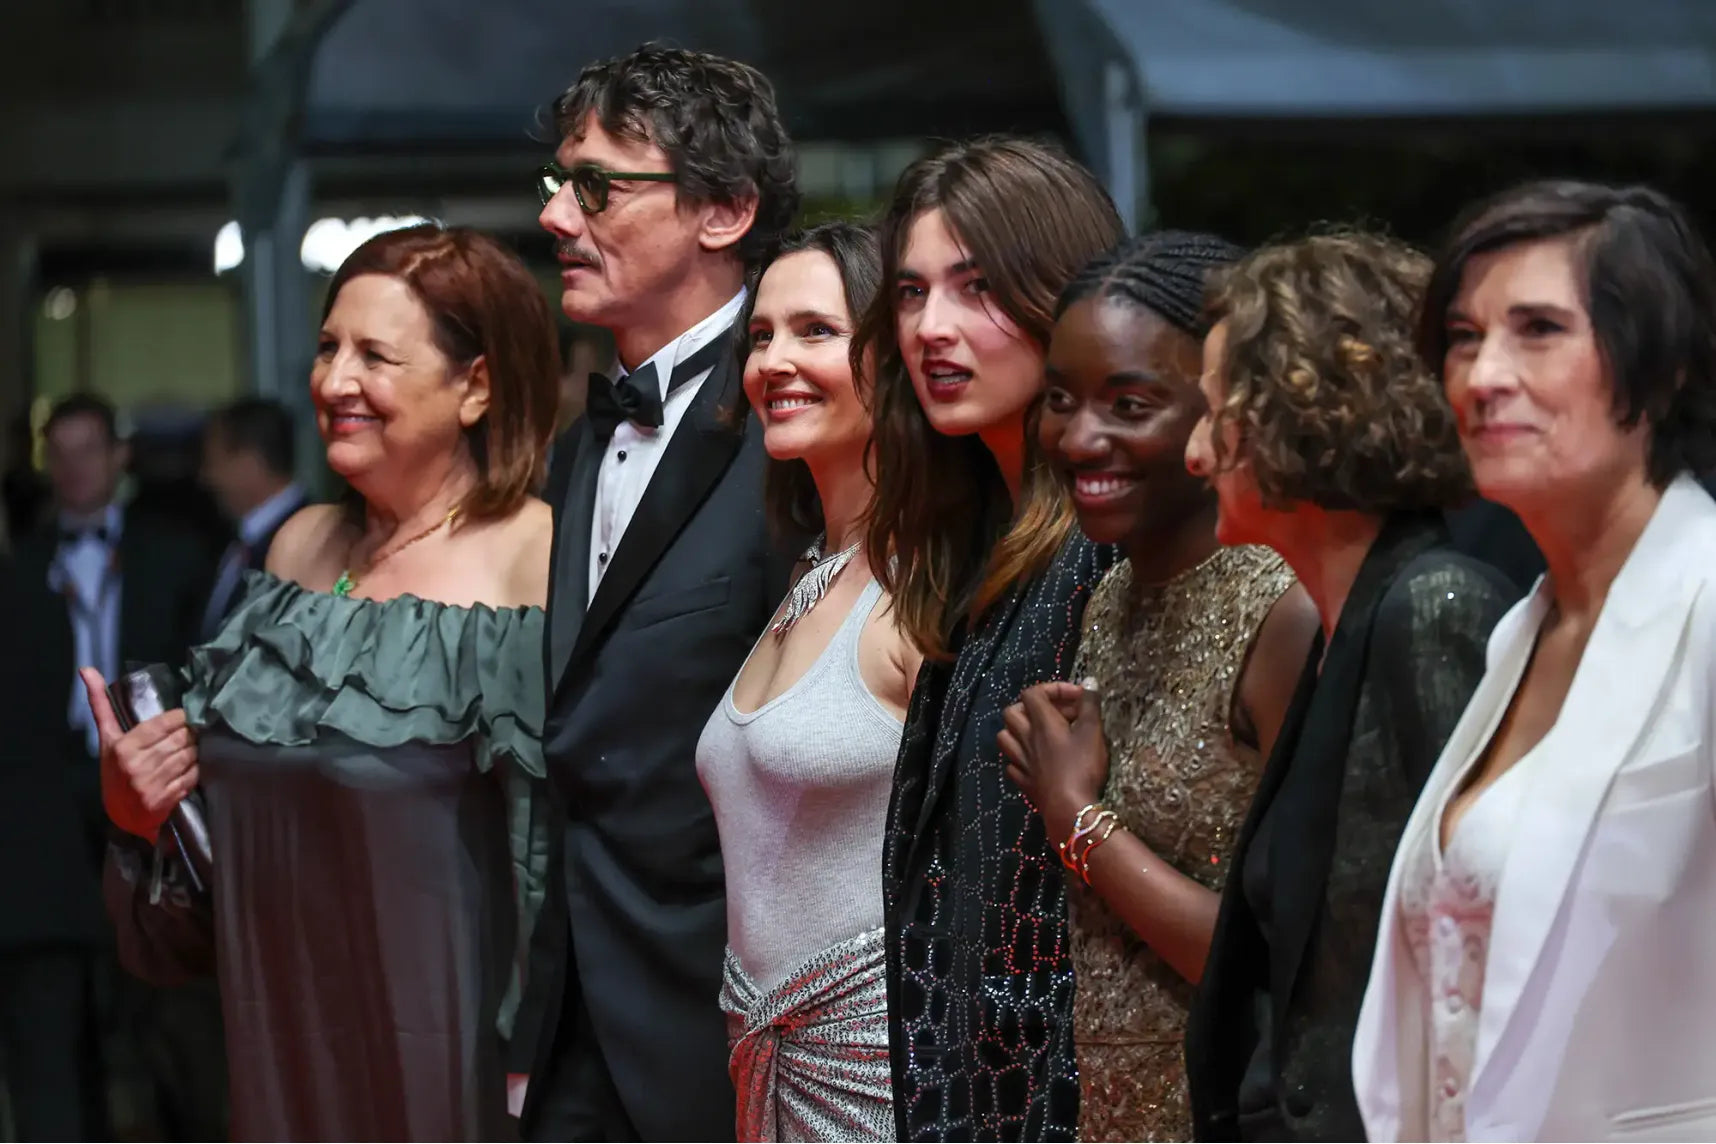 <p>En conclusion, le Festival du Film de Cannes continue d'inspirer et de célébrer le meilleur du cinéma mondial. Nous attendons avec impatience de voir ce que le reste de l'événement nous réserve.</p> <p>Et qui sait, peut-être que "Le retour" sera couronné du prestigieux prix du festival. Restez à l'écoute pour plus d'actualités et de mises à jour du Festival de Cannes.</p>